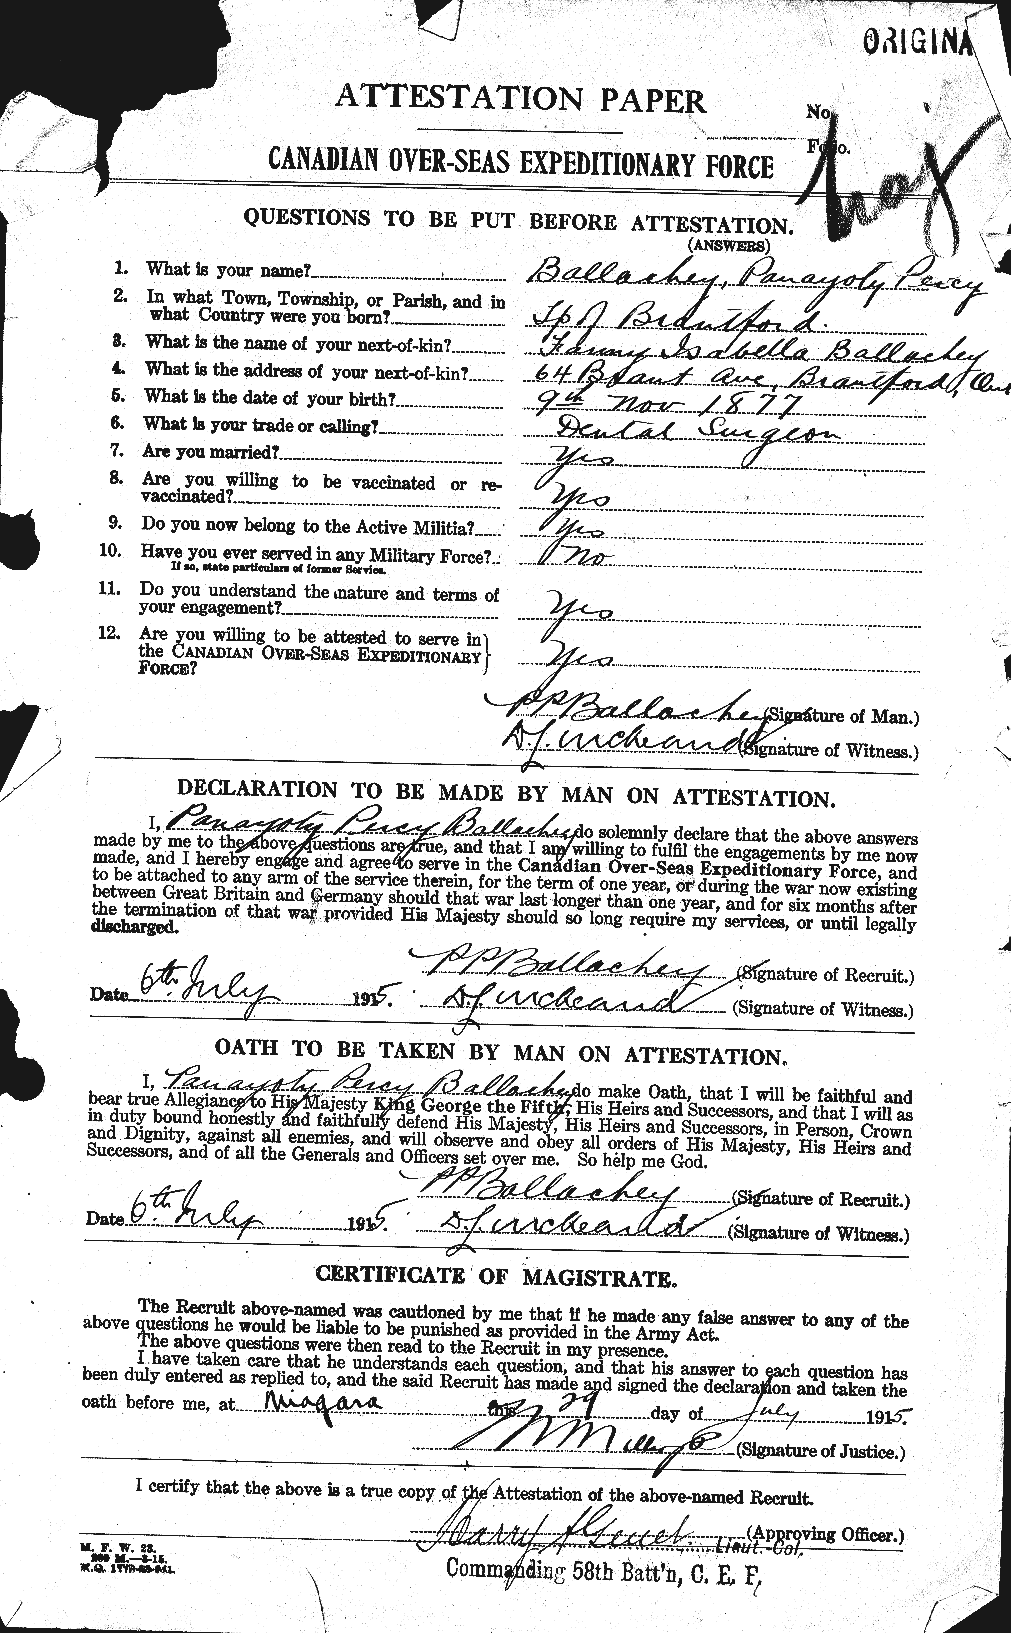 Dossiers du Personnel de la Première Guerre mondiale - CEC 219864a